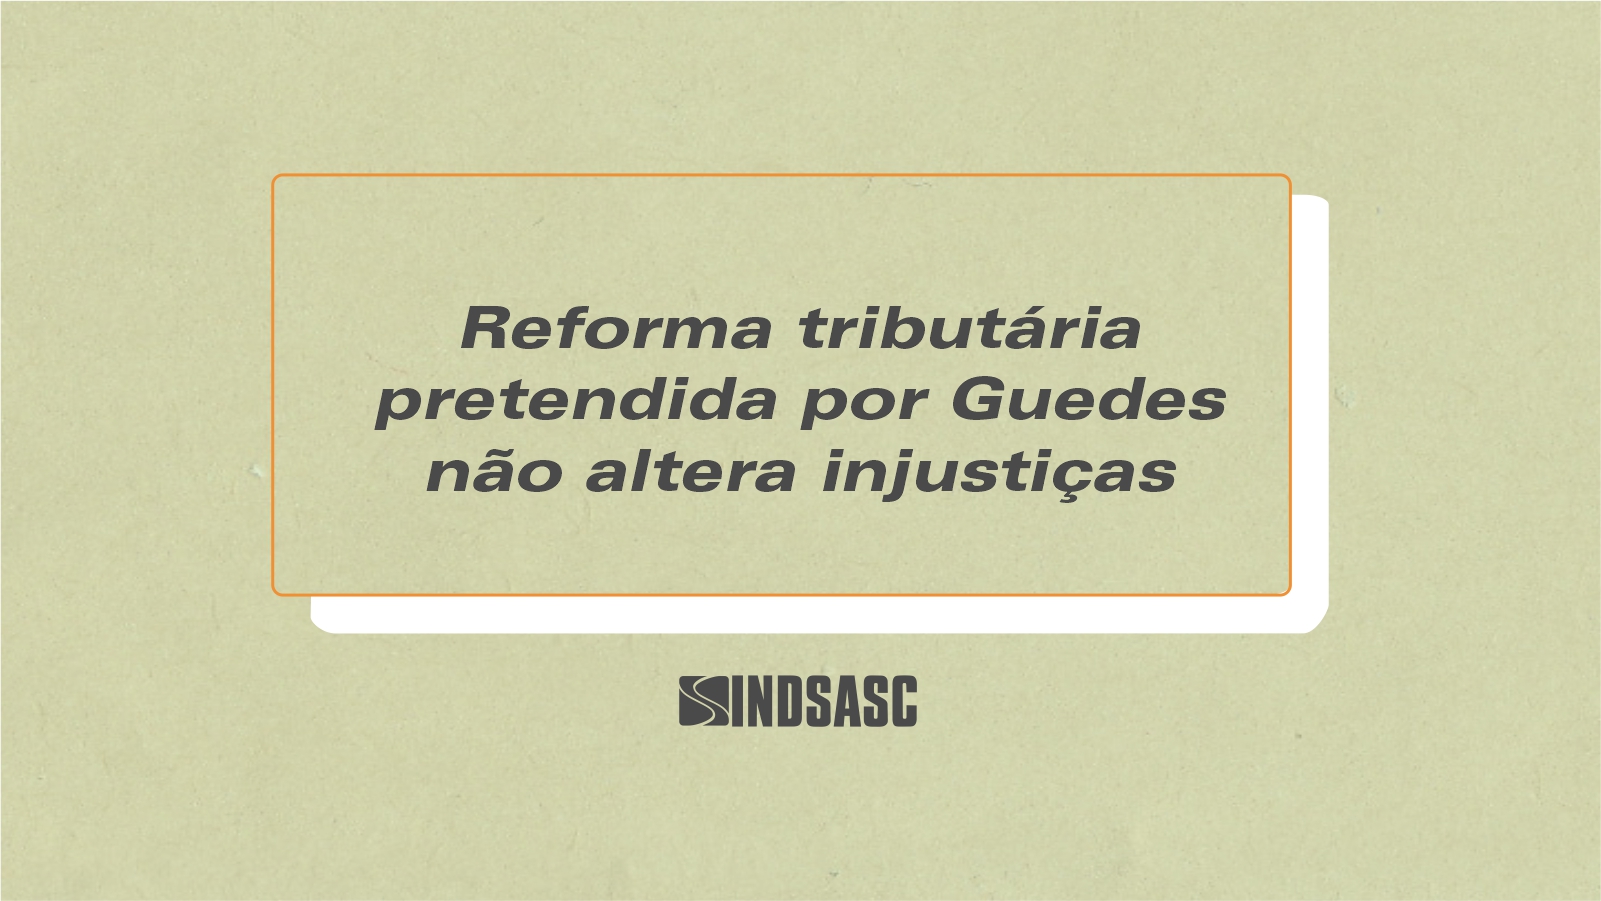 Reforma tributária pretendida por Guedes não altera injustiças